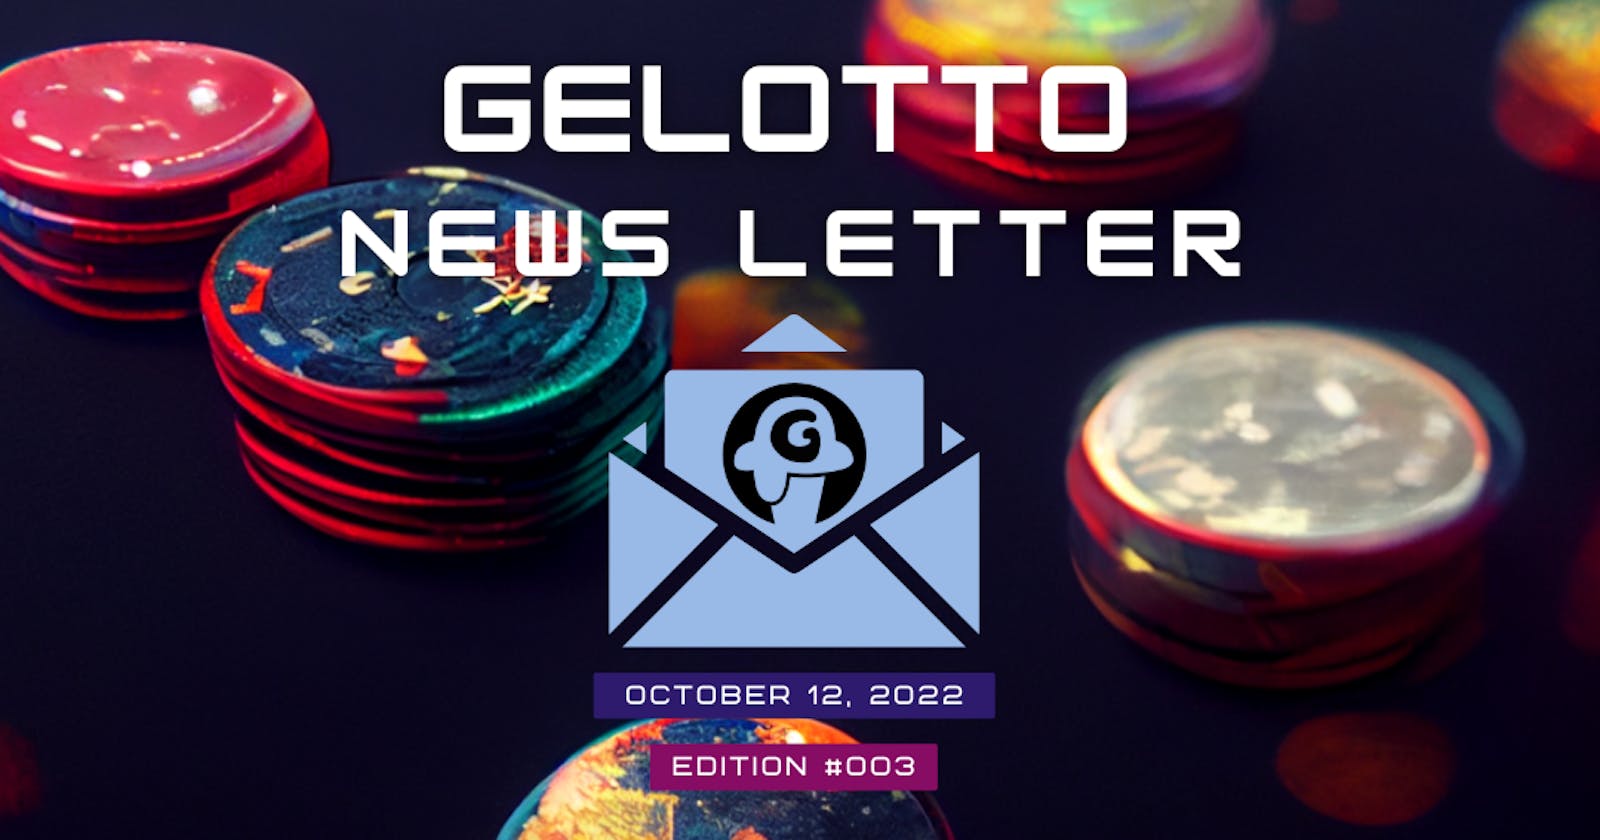 Gelotto Newsletter 12OCT2022